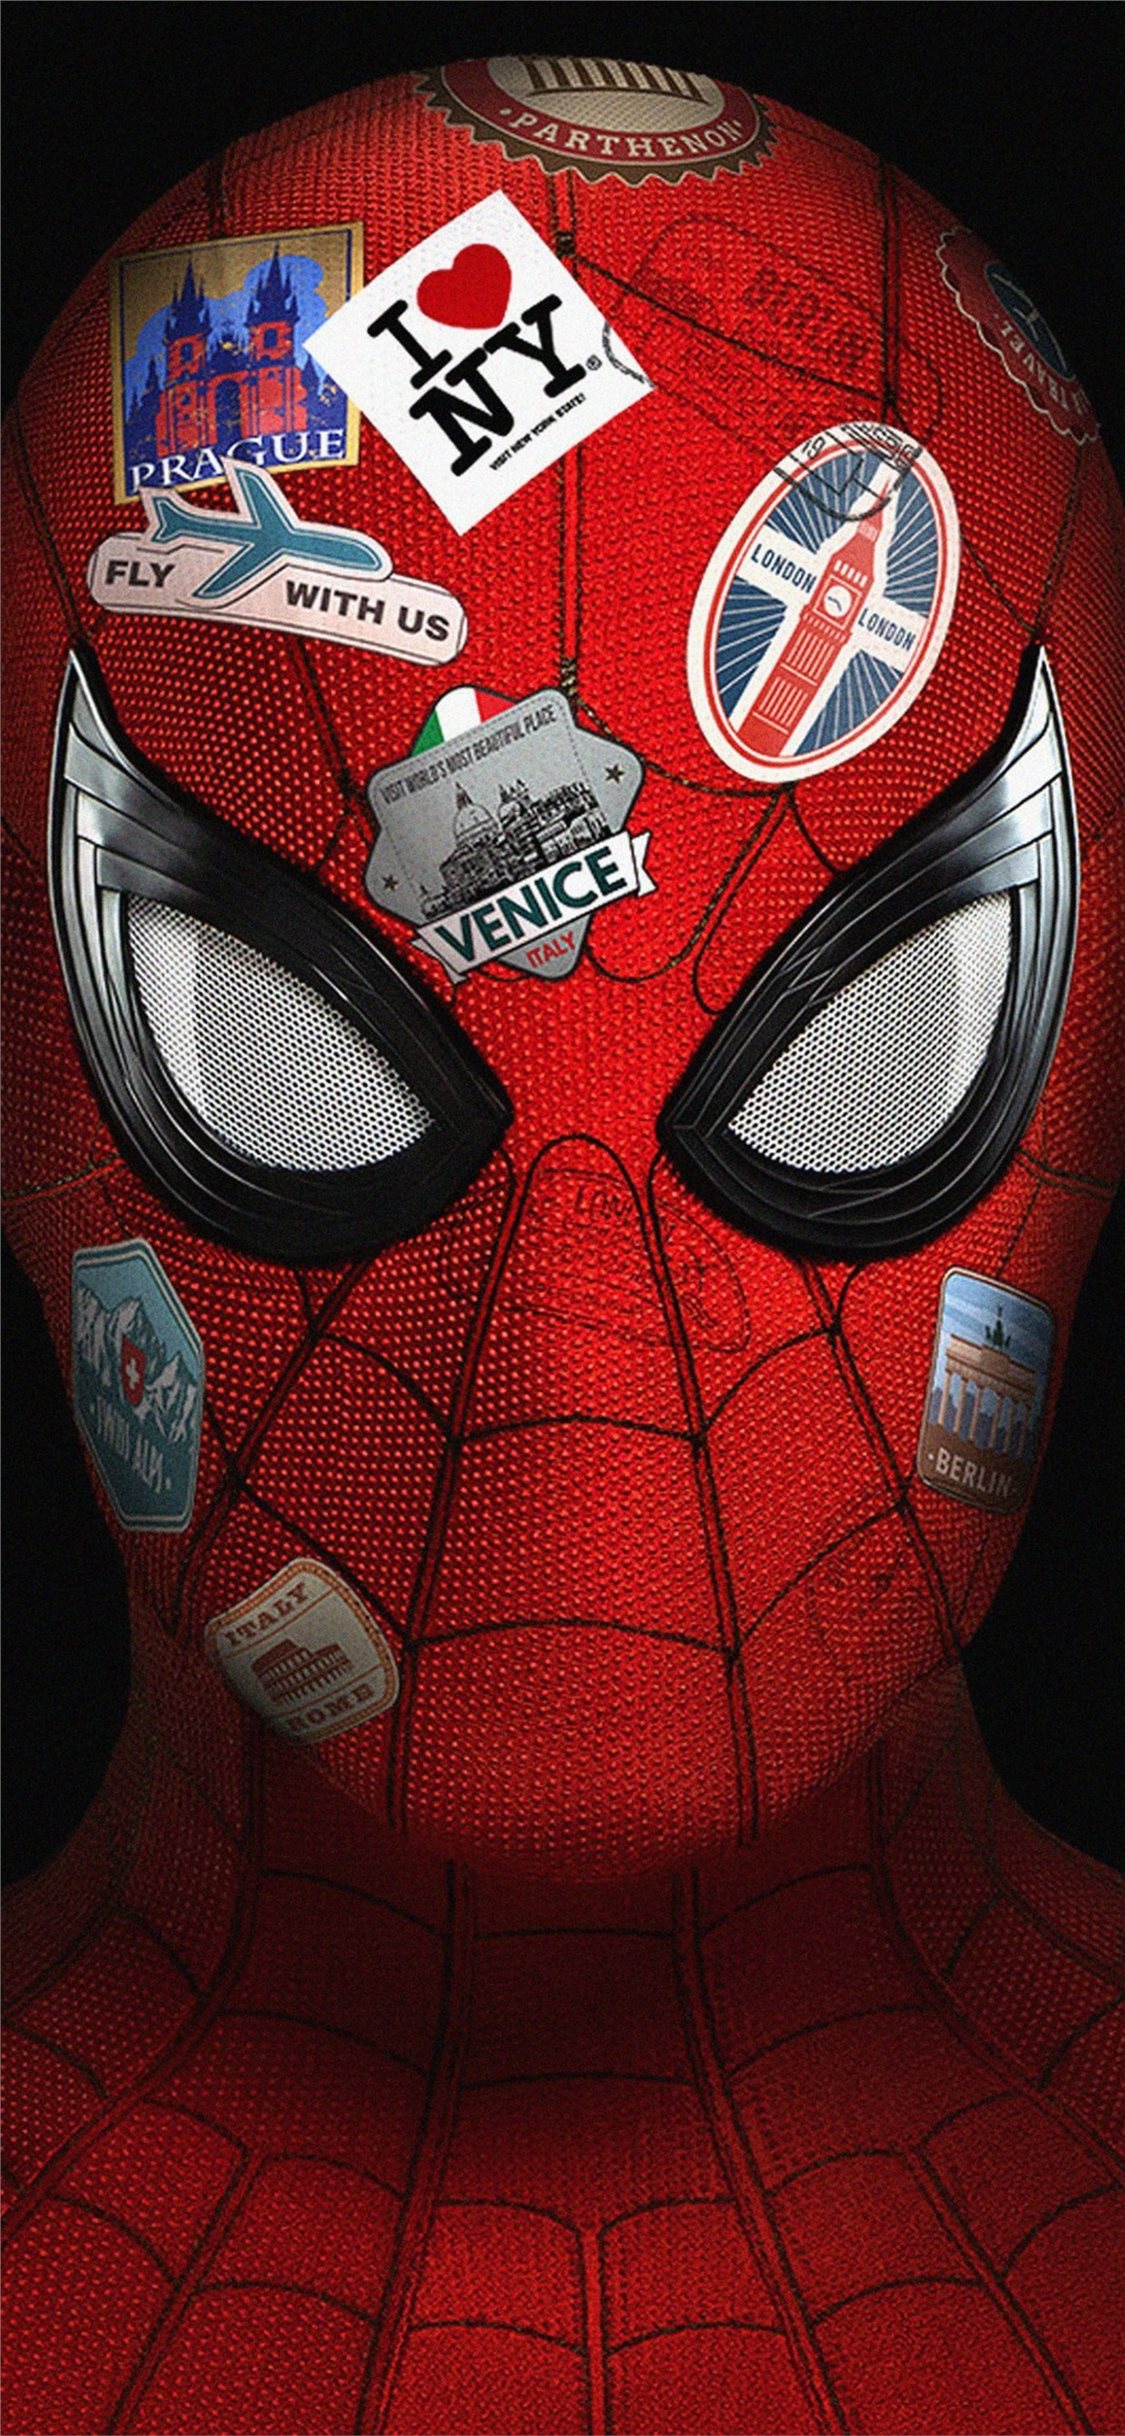 Hãy chiêm ngưỡng hình nền Spider-Man Far From Home đầy tuyệt vời này và sẵn sàng trở thành một siêu anh hùng đích thực. Bộ phim thú vị này sẽ đưa bạn vào cuộc phiêu lưu của Spider-Man đầy nguy hiểm và thử thách, với những tình tiết hấp dẫn và đầy kịch tính.